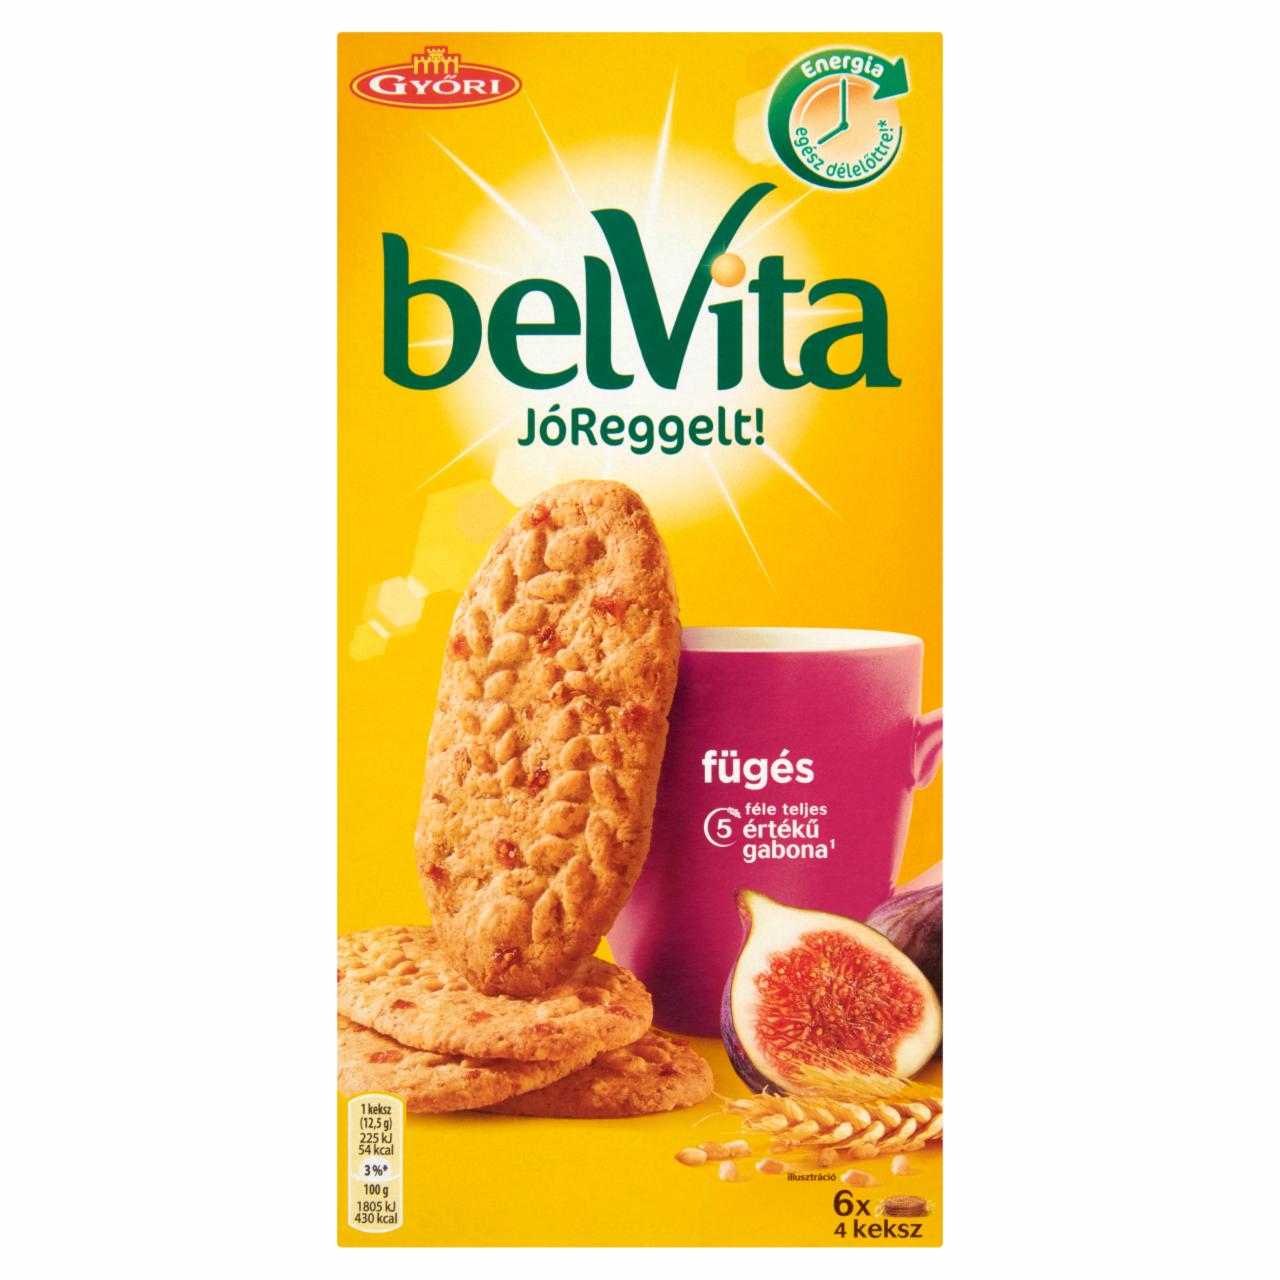 Képek - belVita JóReggelt! fügés gabonás omlós keksz 300 g